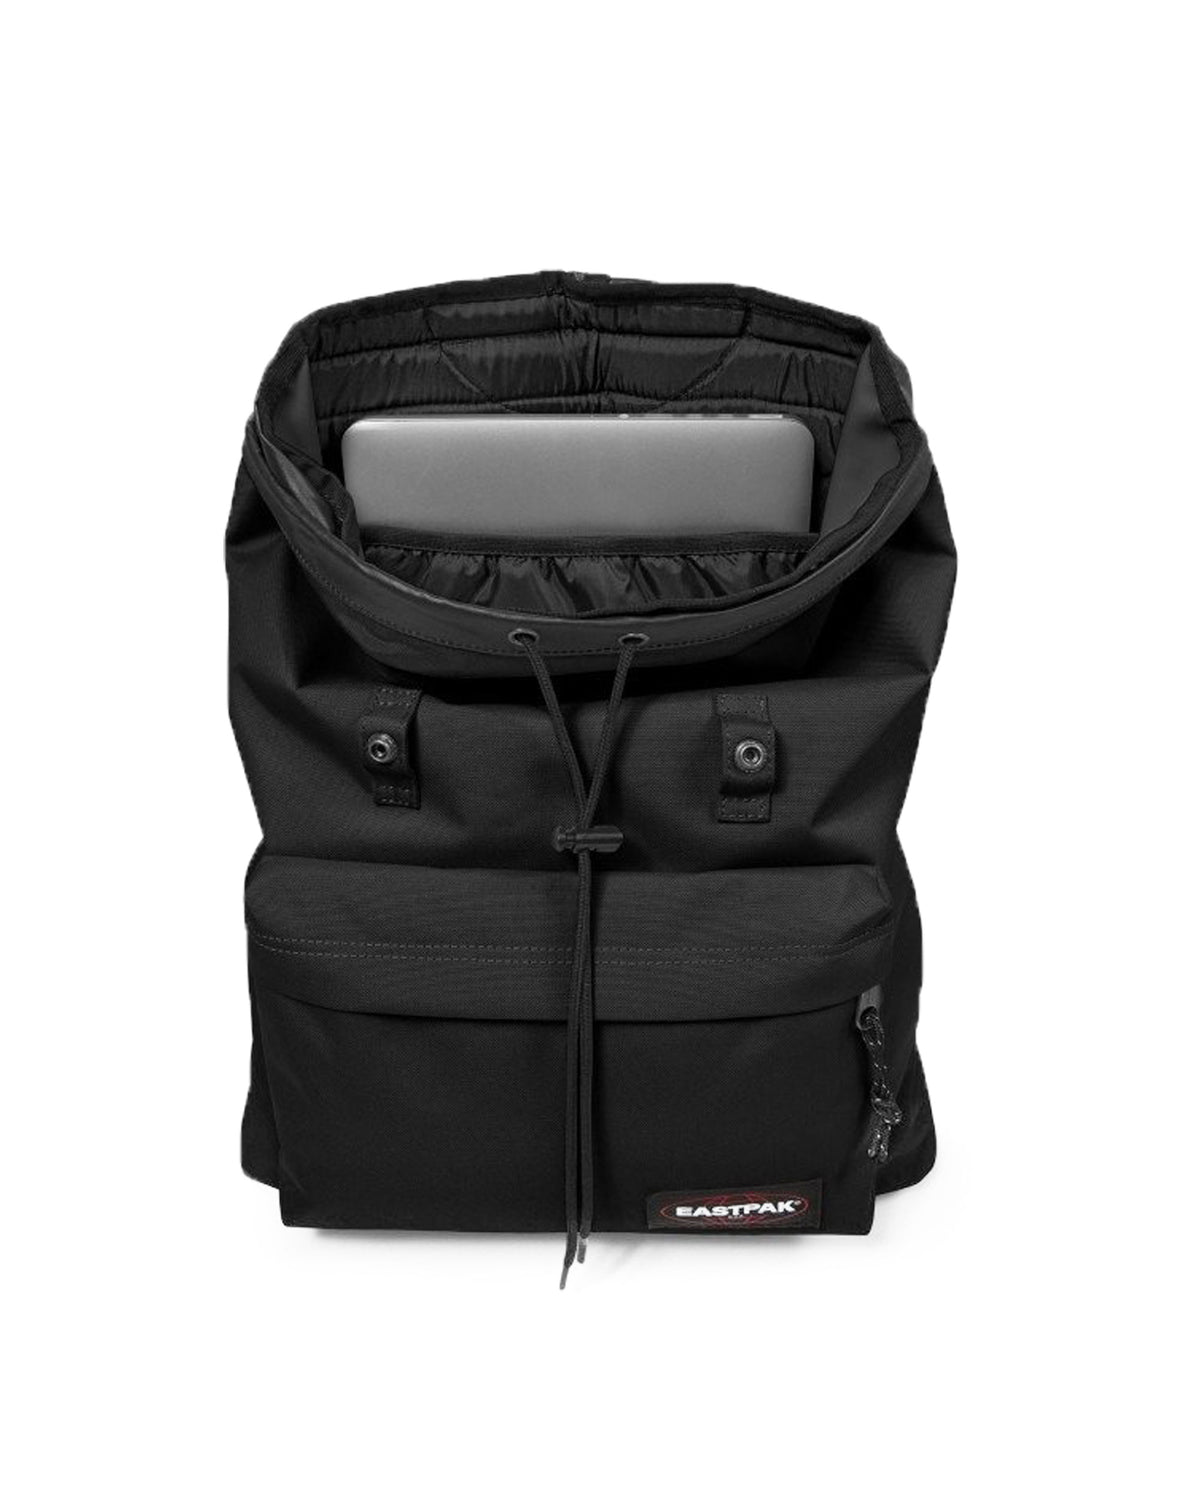 Backpack Eastpak London Black